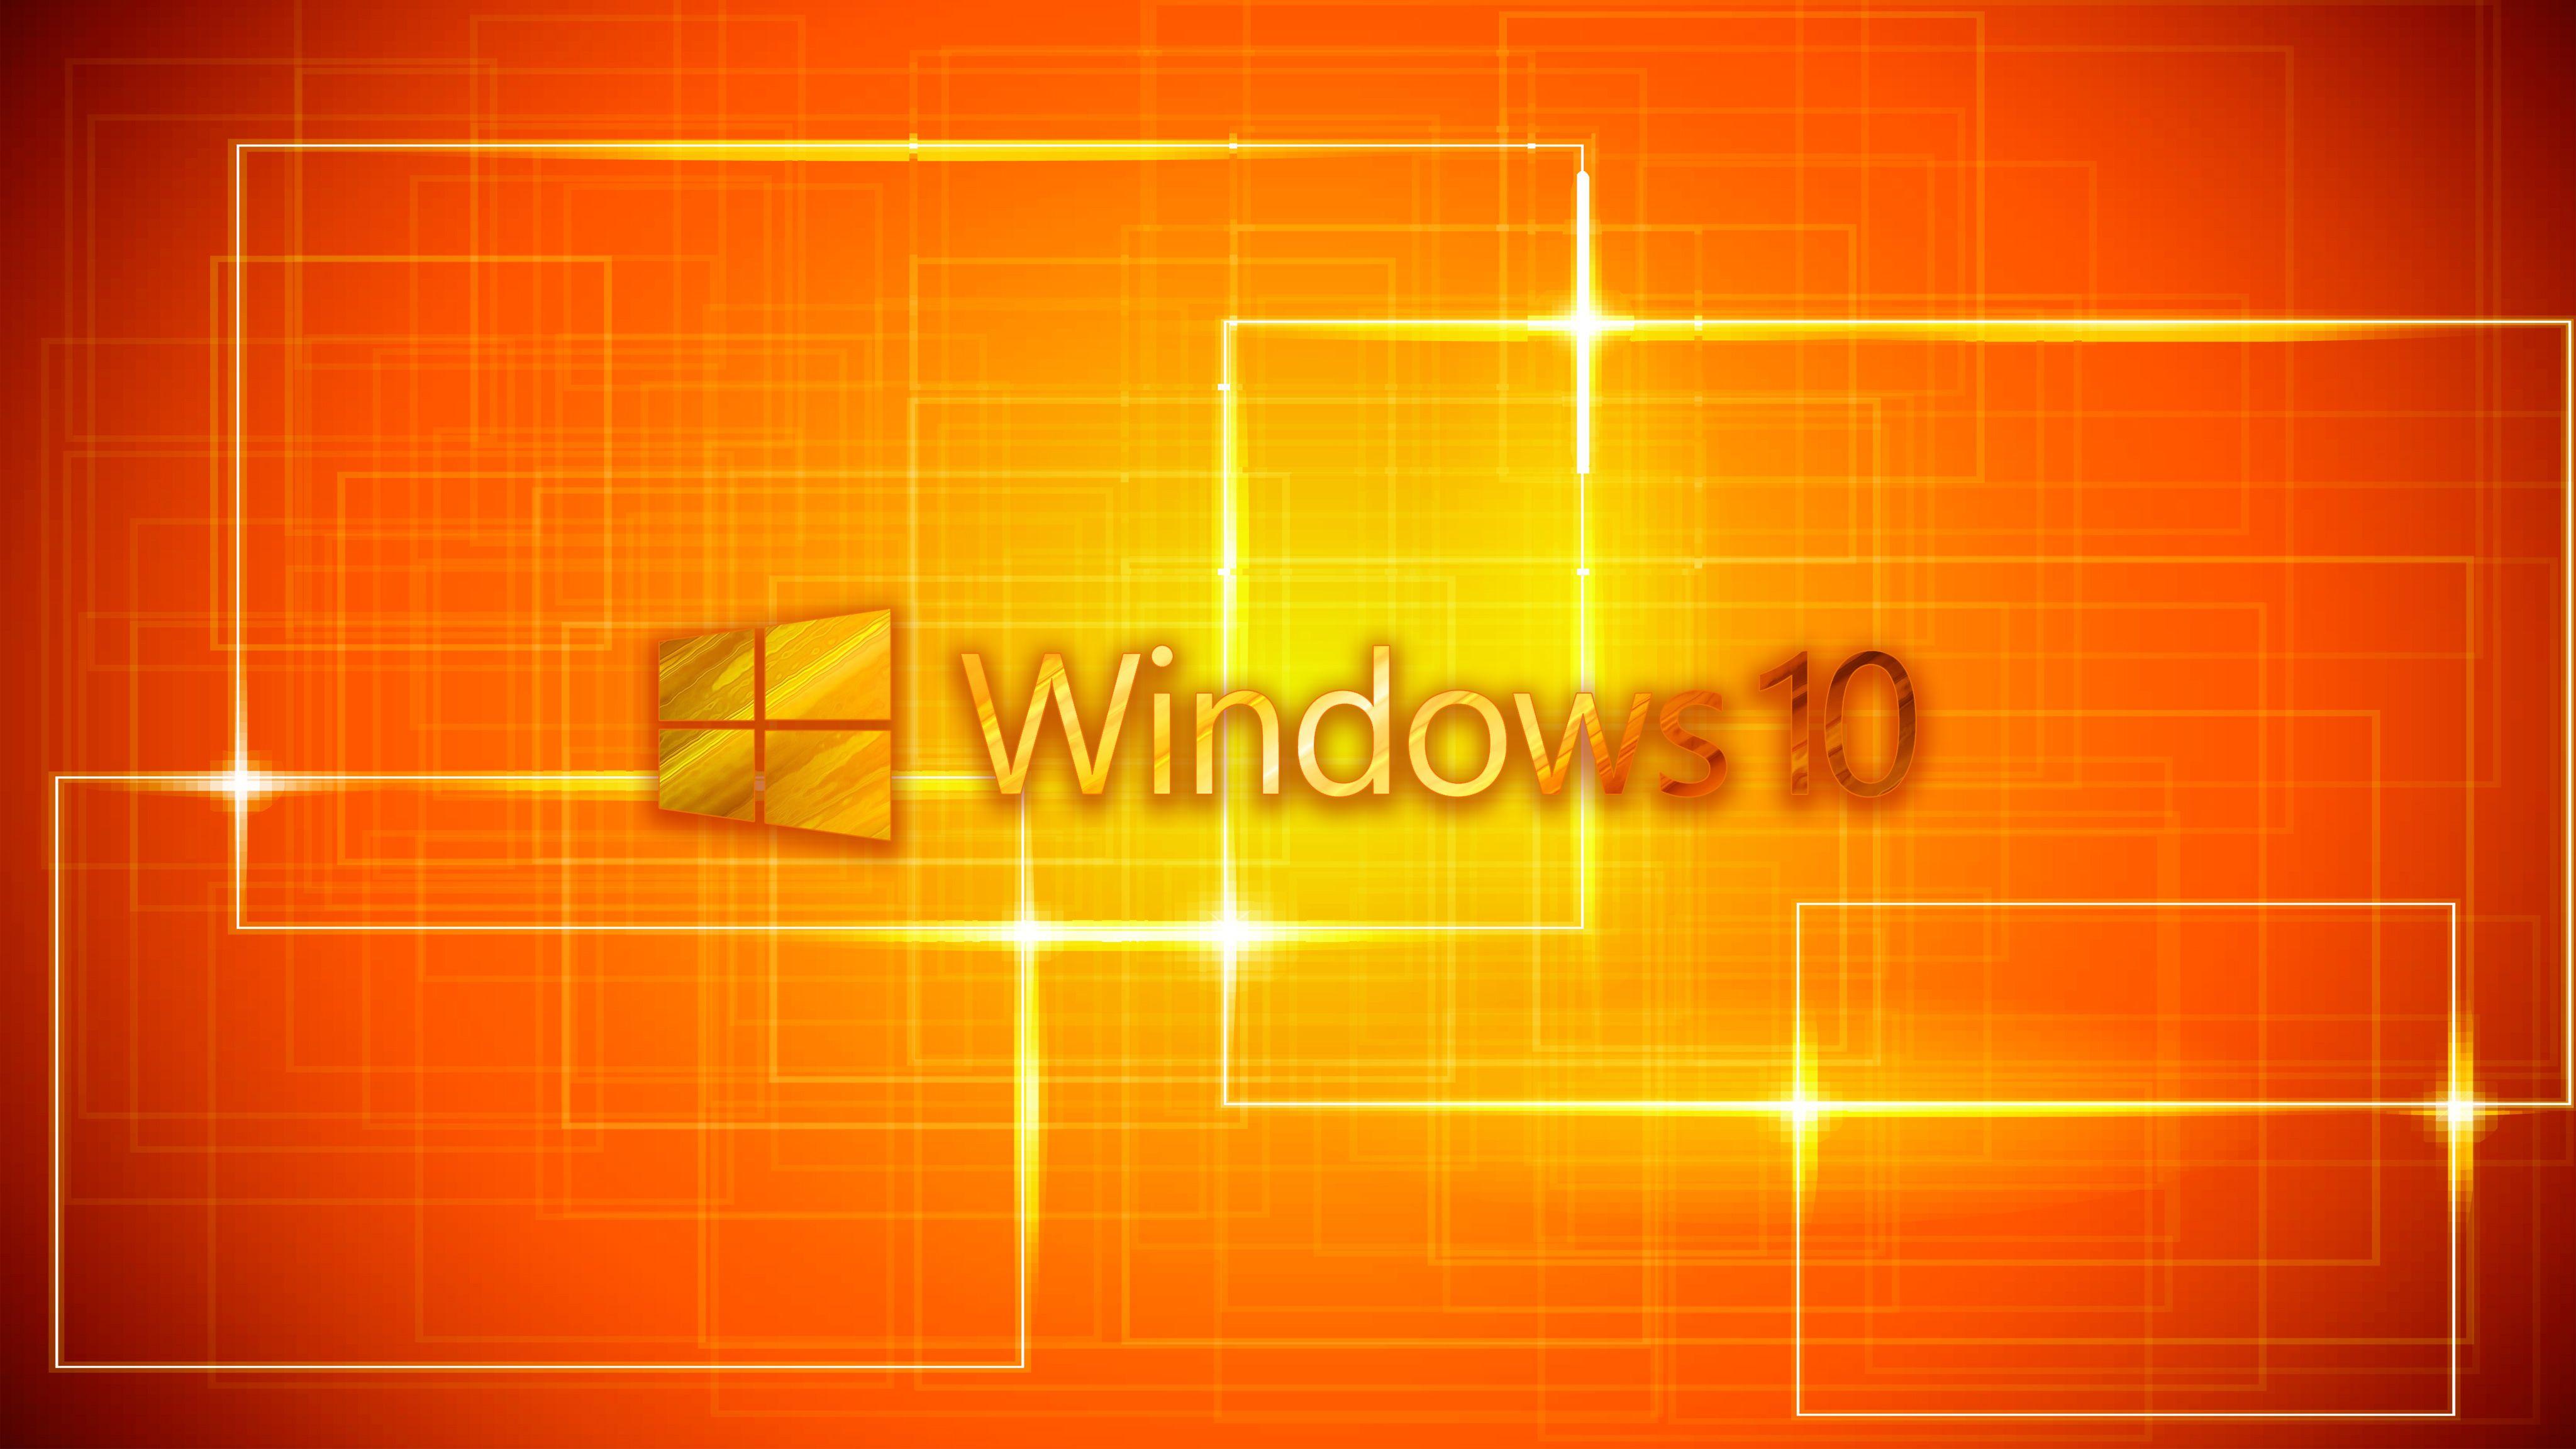 Hình nền Windows màu cam thật sự độc đáo và cuốn hút sự chú ý của bạn. Nó giúp tạo ra một màn hình desktop tươi mới, sáng sủa, mang lại cảm giác tươi trẻ cho người dùng. Hình ảnh liên quan sẽ giúp bạn tìm thấy những bức ảnh tuyệt vời như vậy.